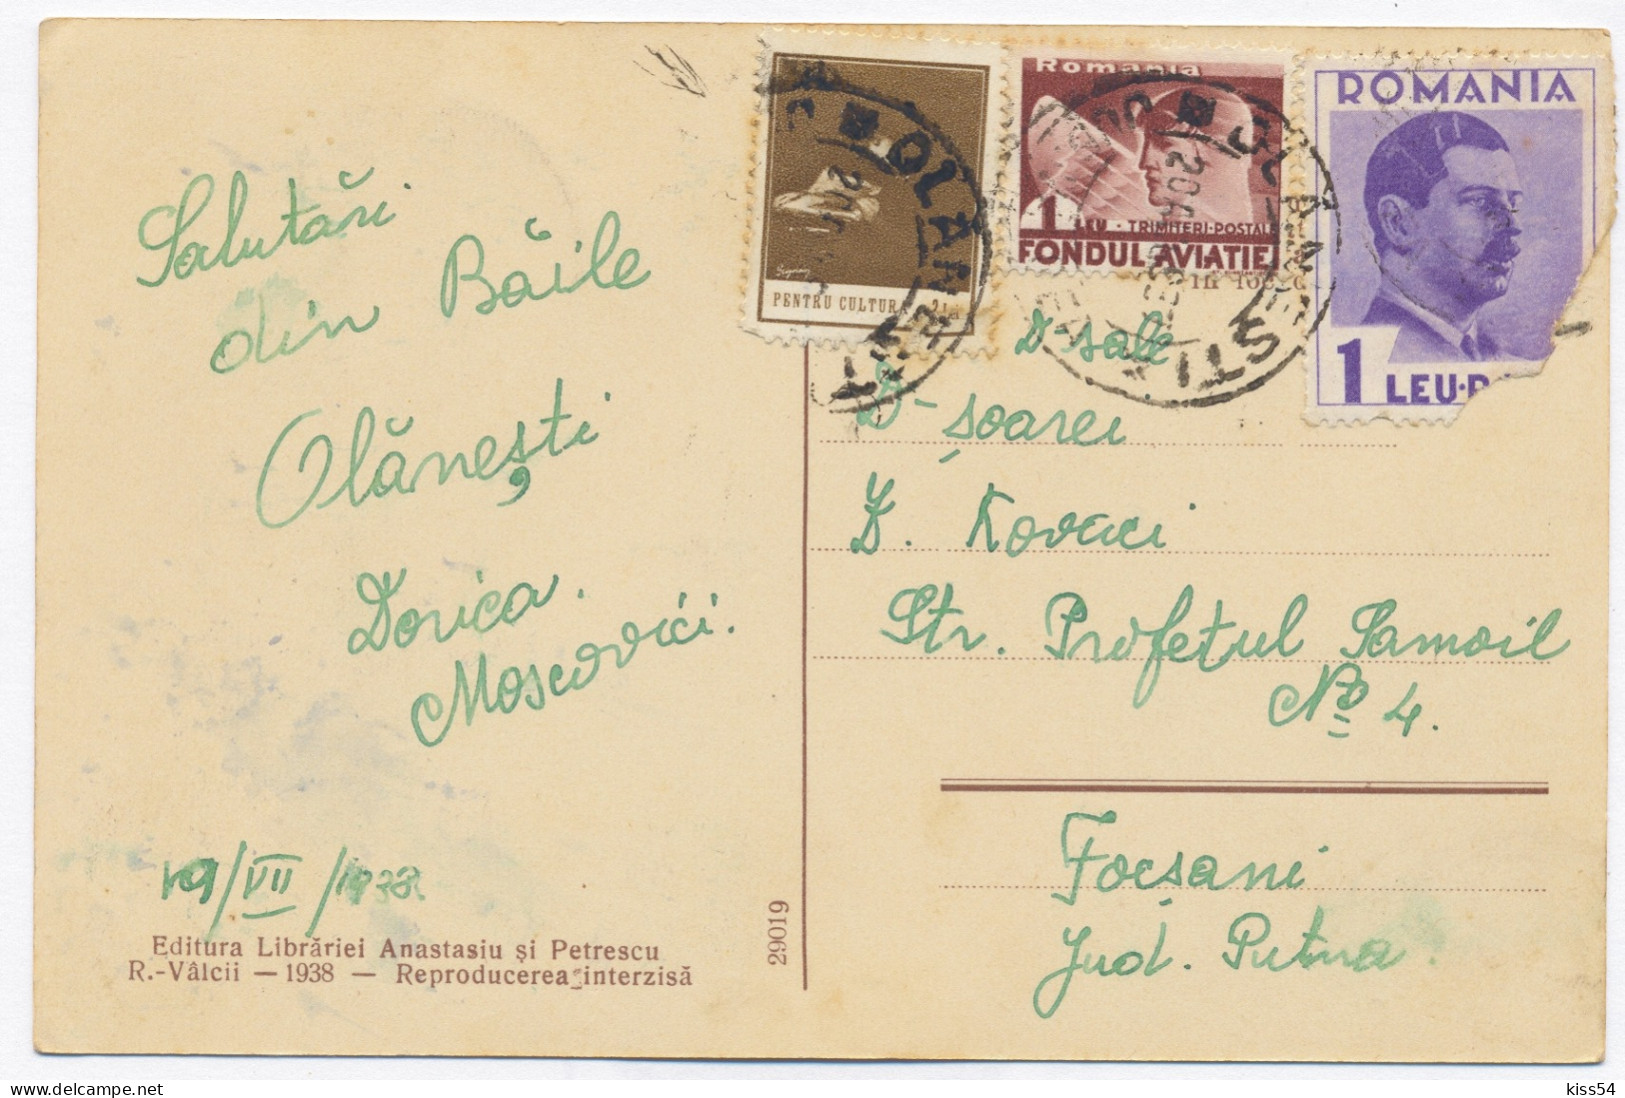 RO 45 - 11549 OLANESTI, Valcea, Park, Romania - Old Postcard - Used - 1938 - Roemenië